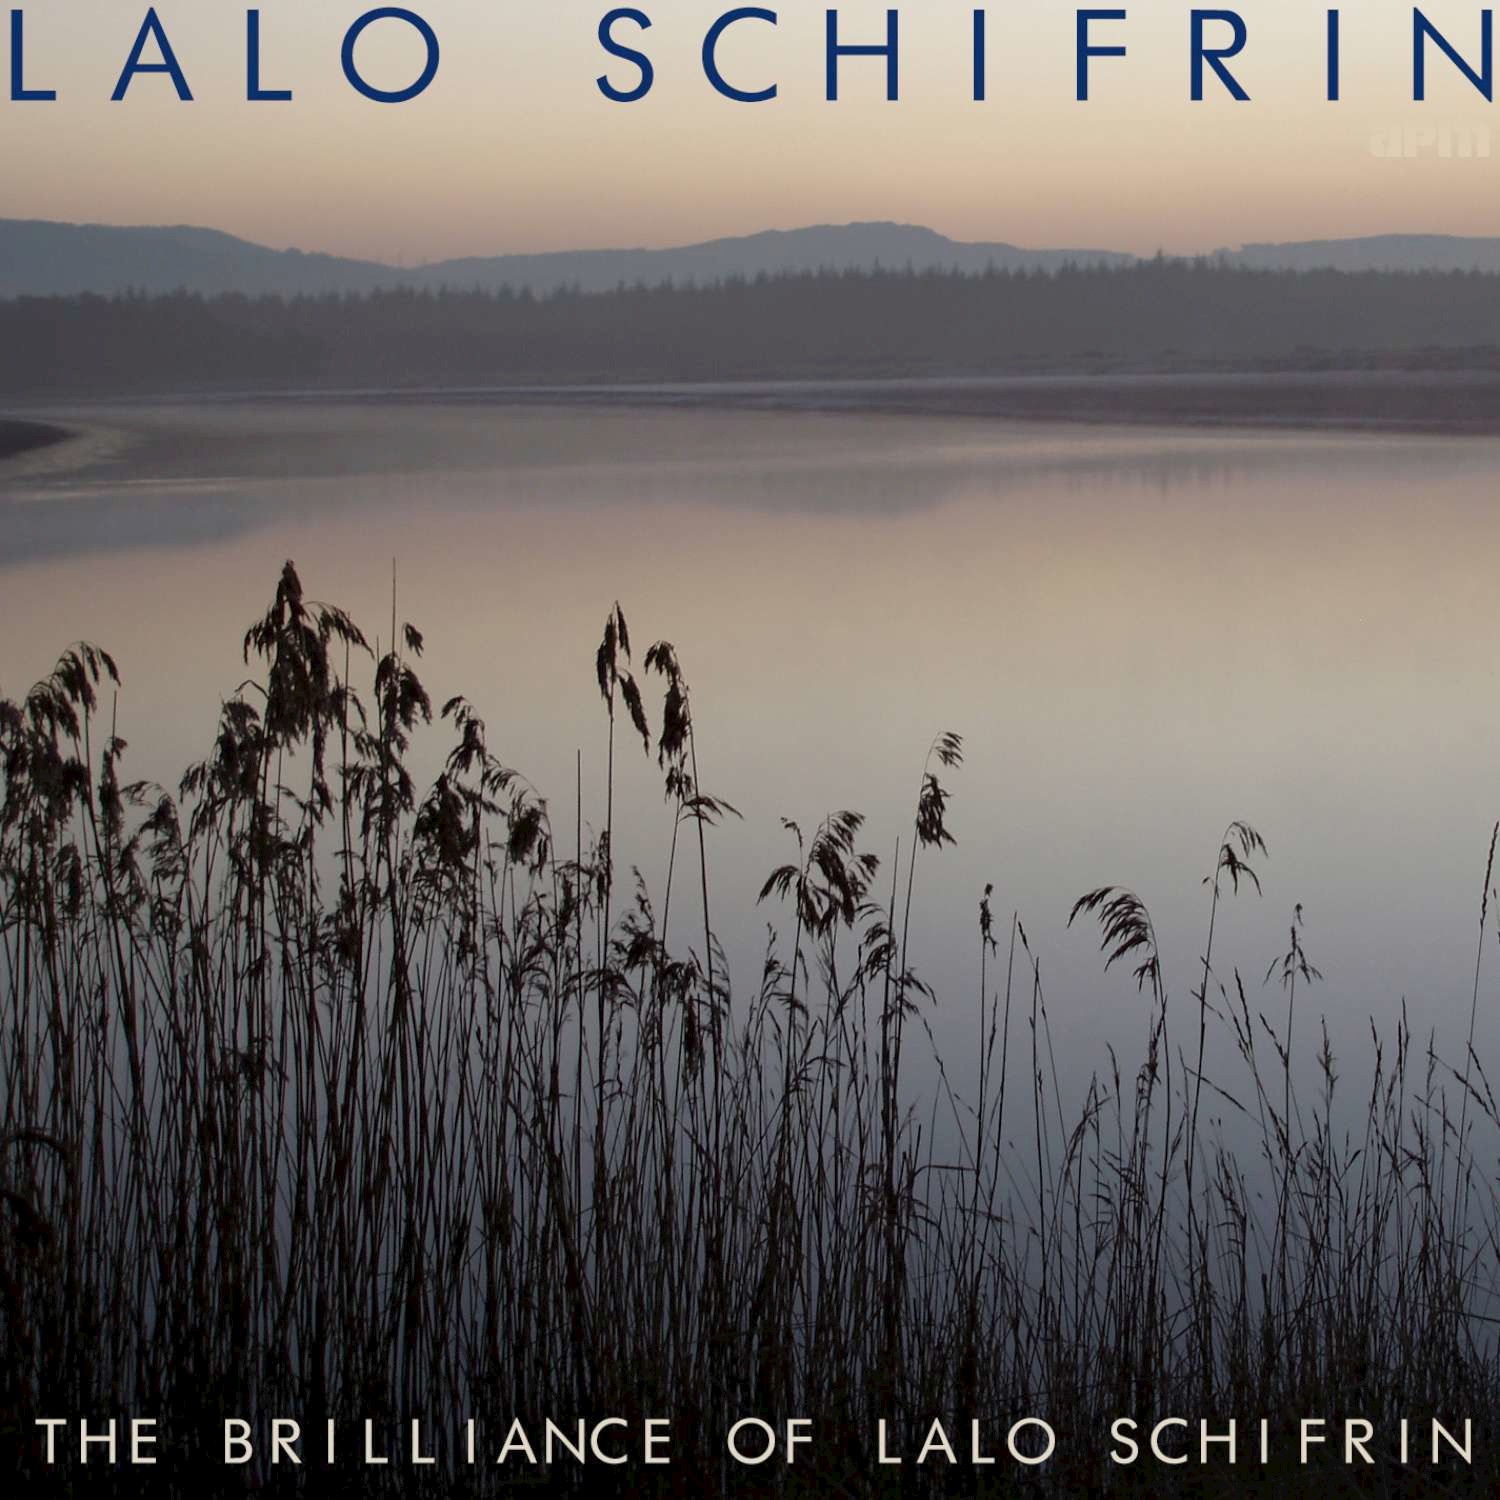 The Brilliance of Lalo Schifrin